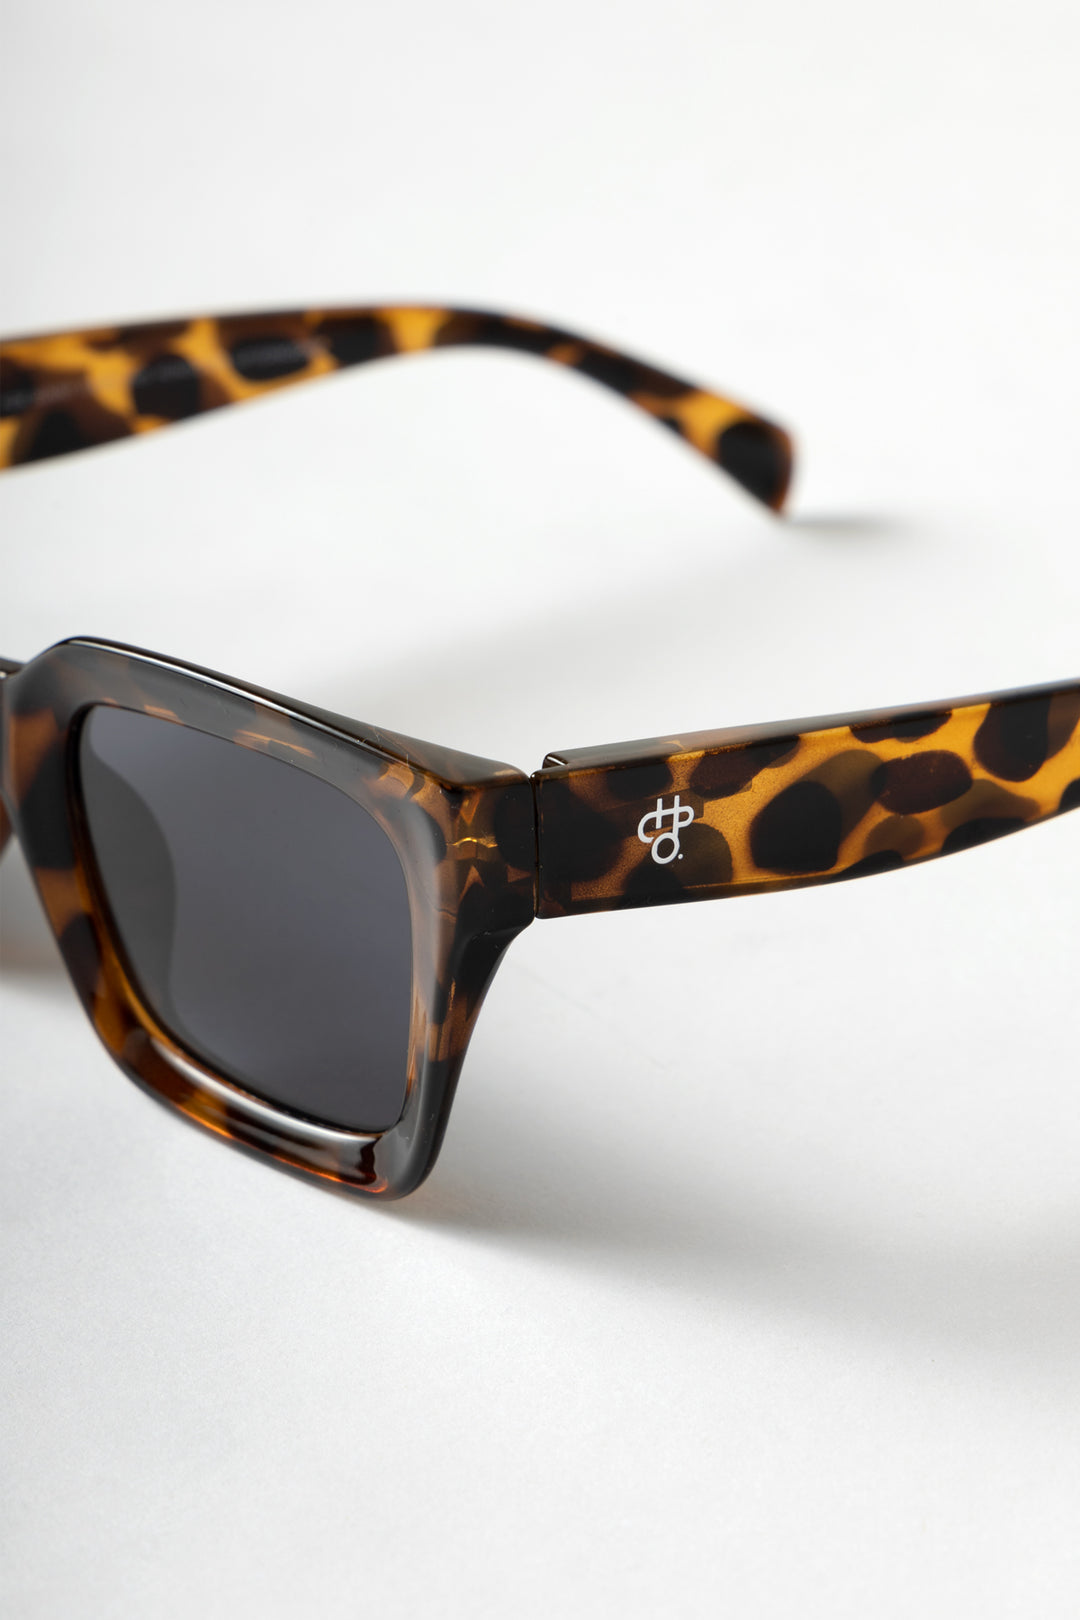 CHPO - Anna Sunglasses - Leopard